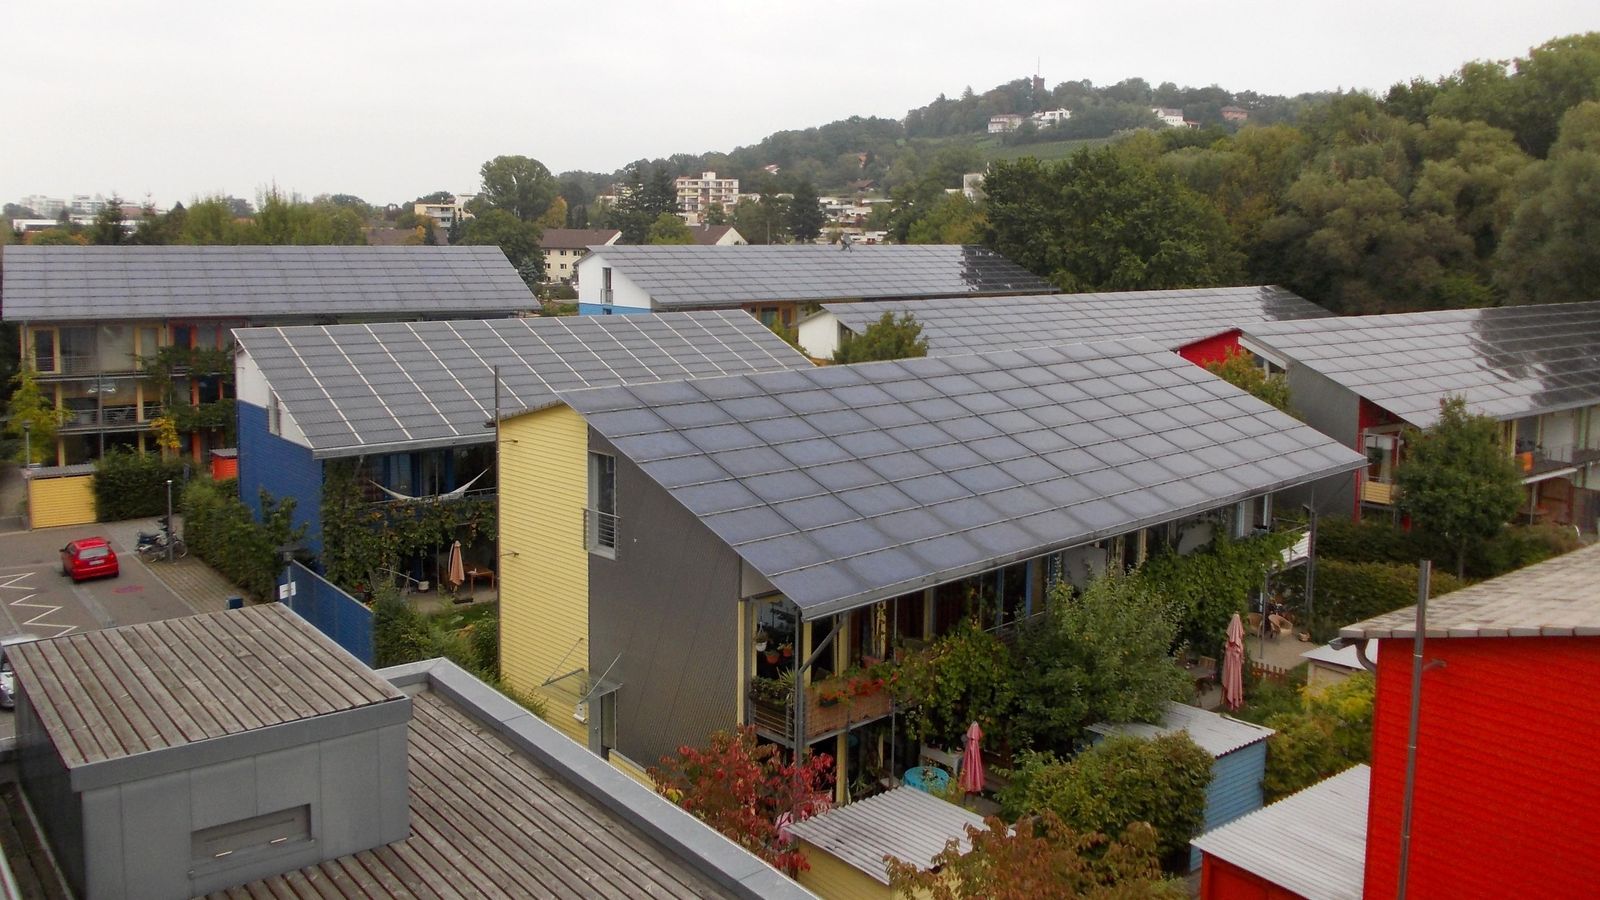 Foto: Viviendas sostenibles alimentadas mediante energía solar en un 'barrio ecológico' en Friburgo, Alemania. (Foto: Arnold Plesse / Wikipedia)